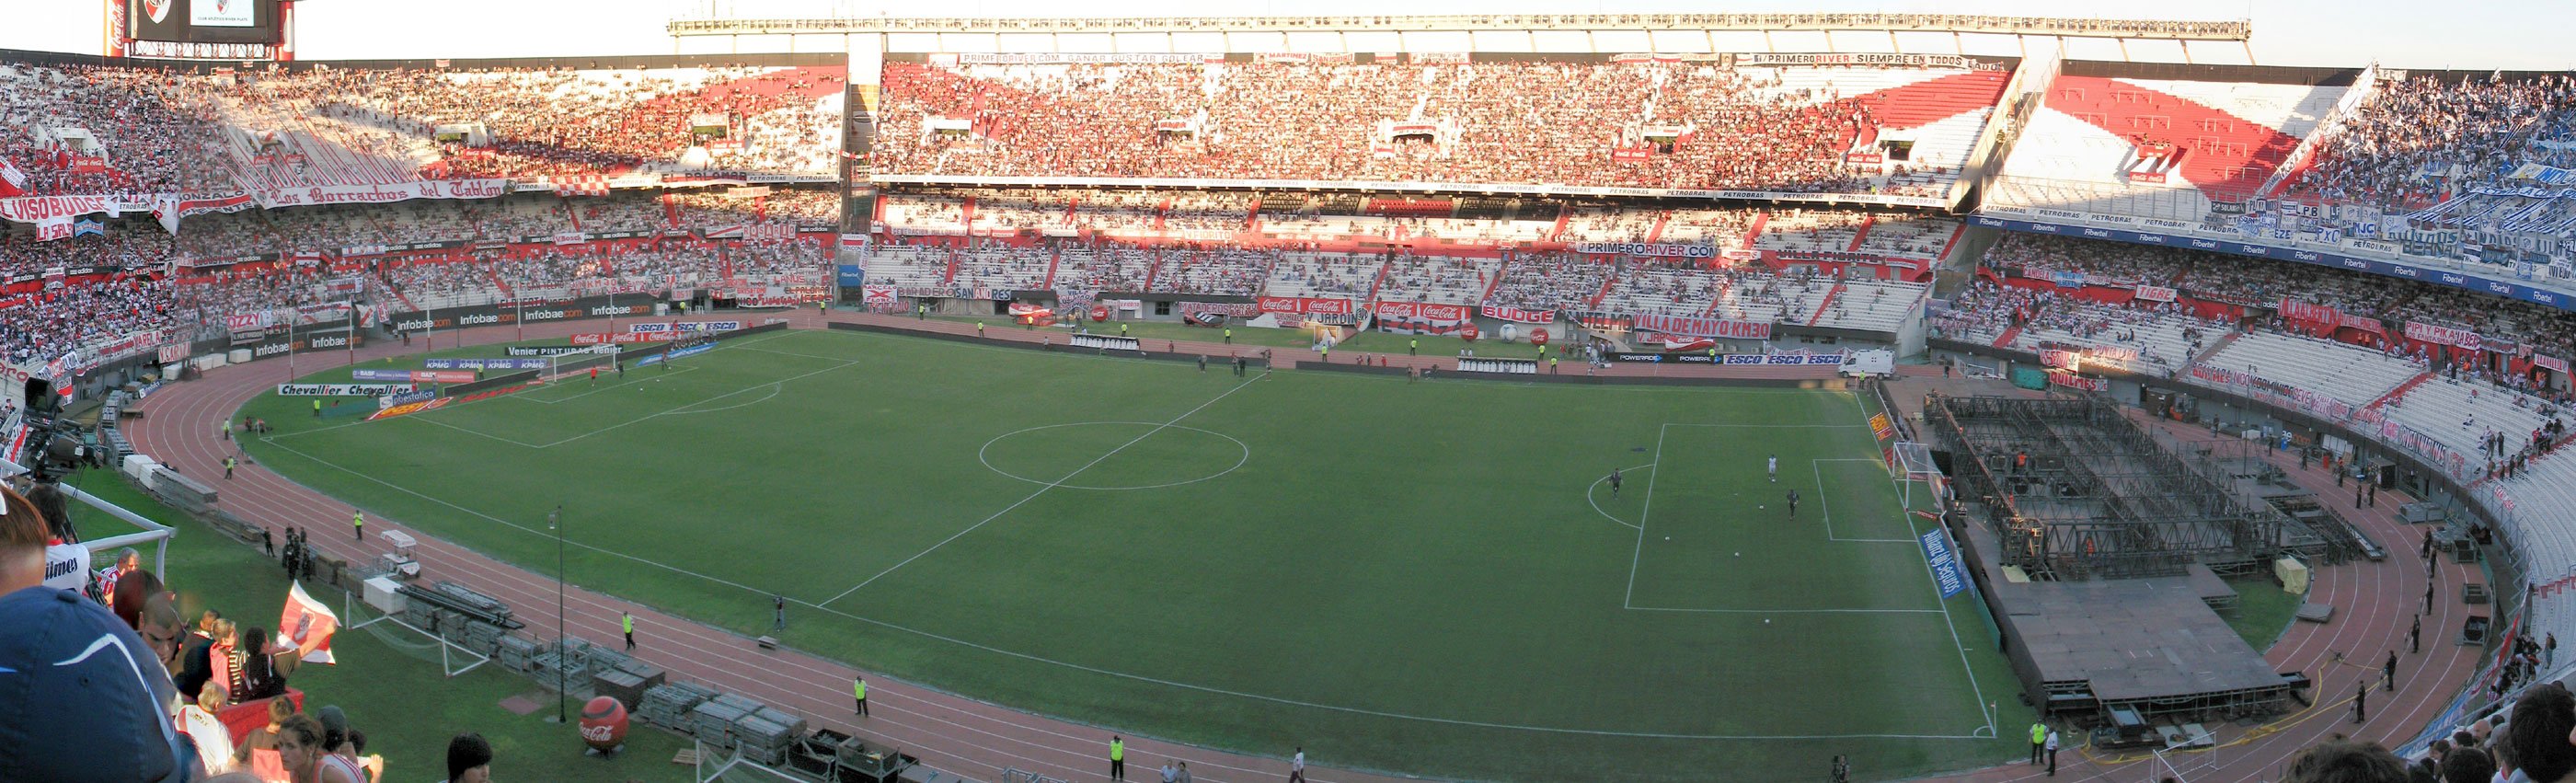 Estadio Monumental, Buenos Aires, Argentina